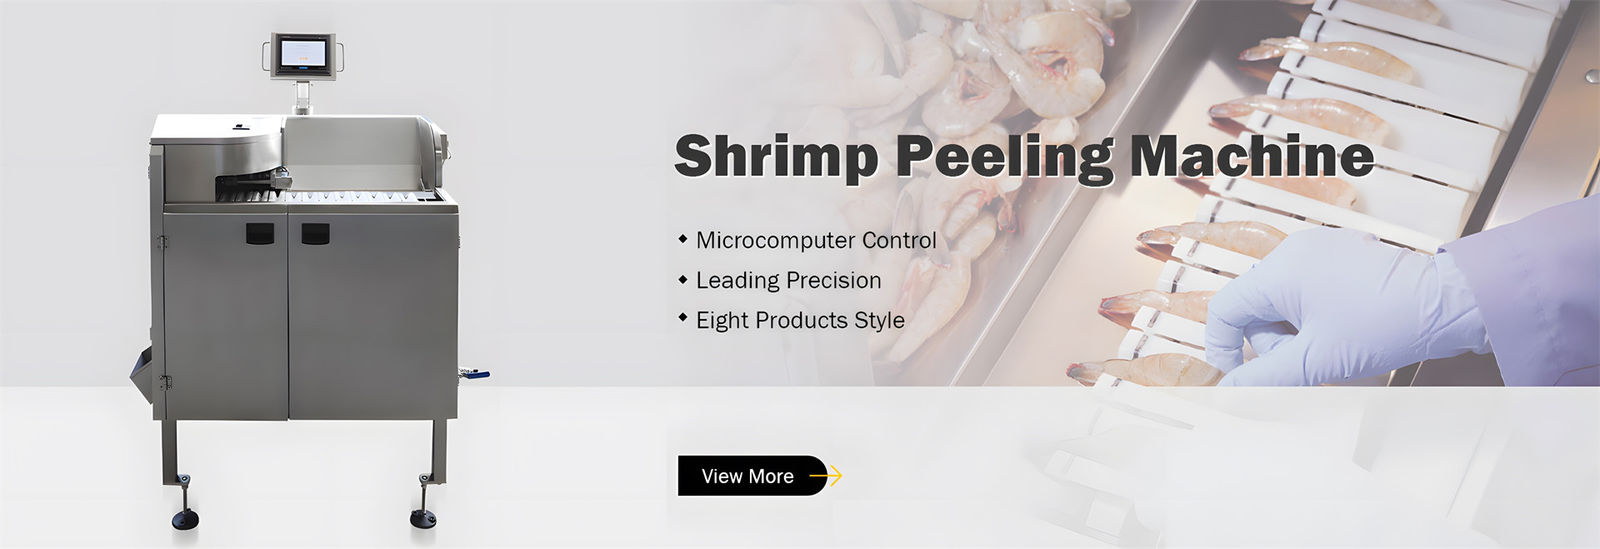 Shrimp Processing Machine